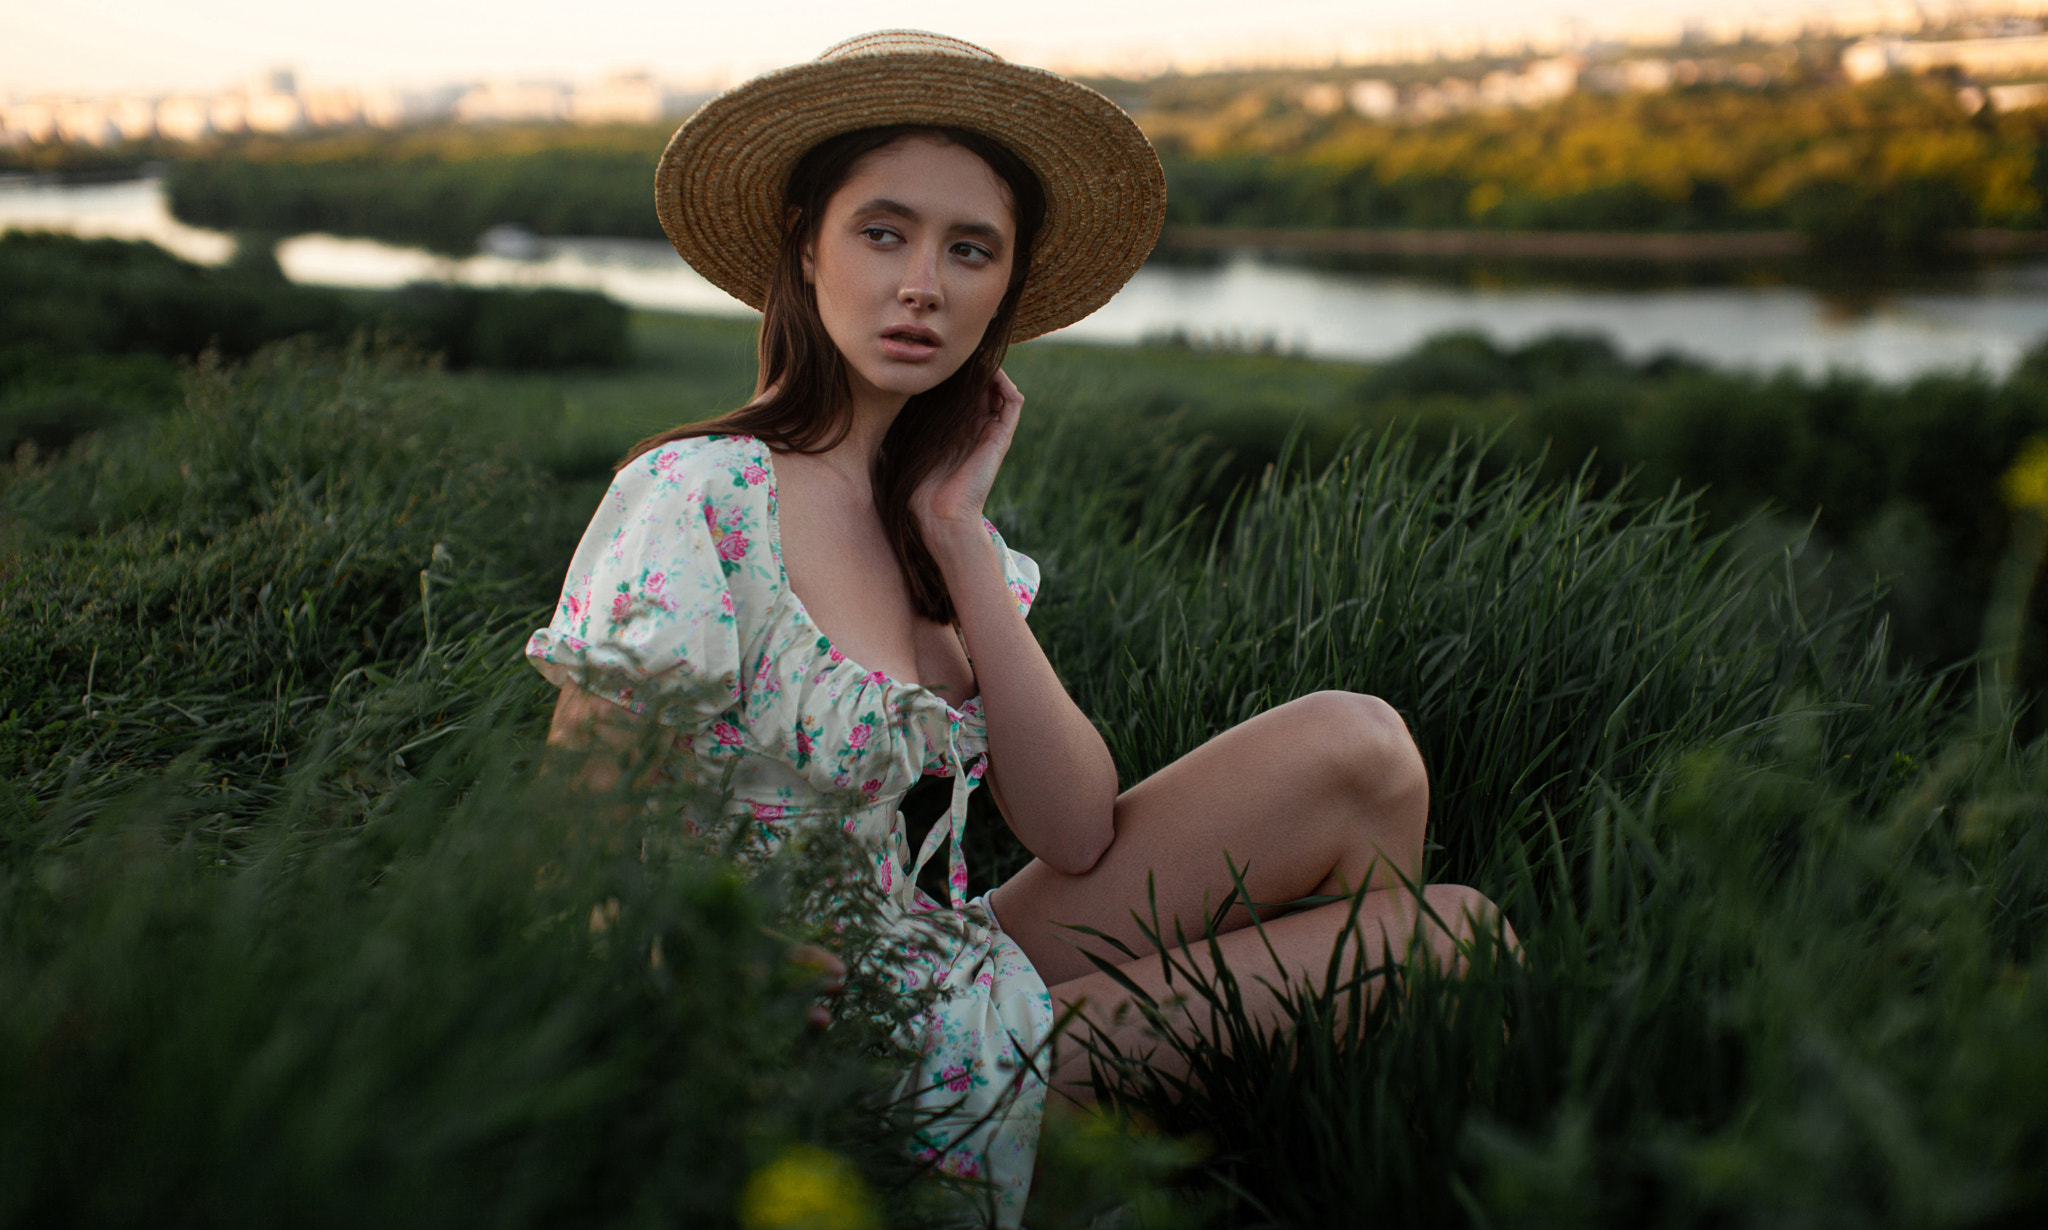 Andrey Frolov Women Hat Brunette Looking Away Dress Nature Field Grass 2048x1230